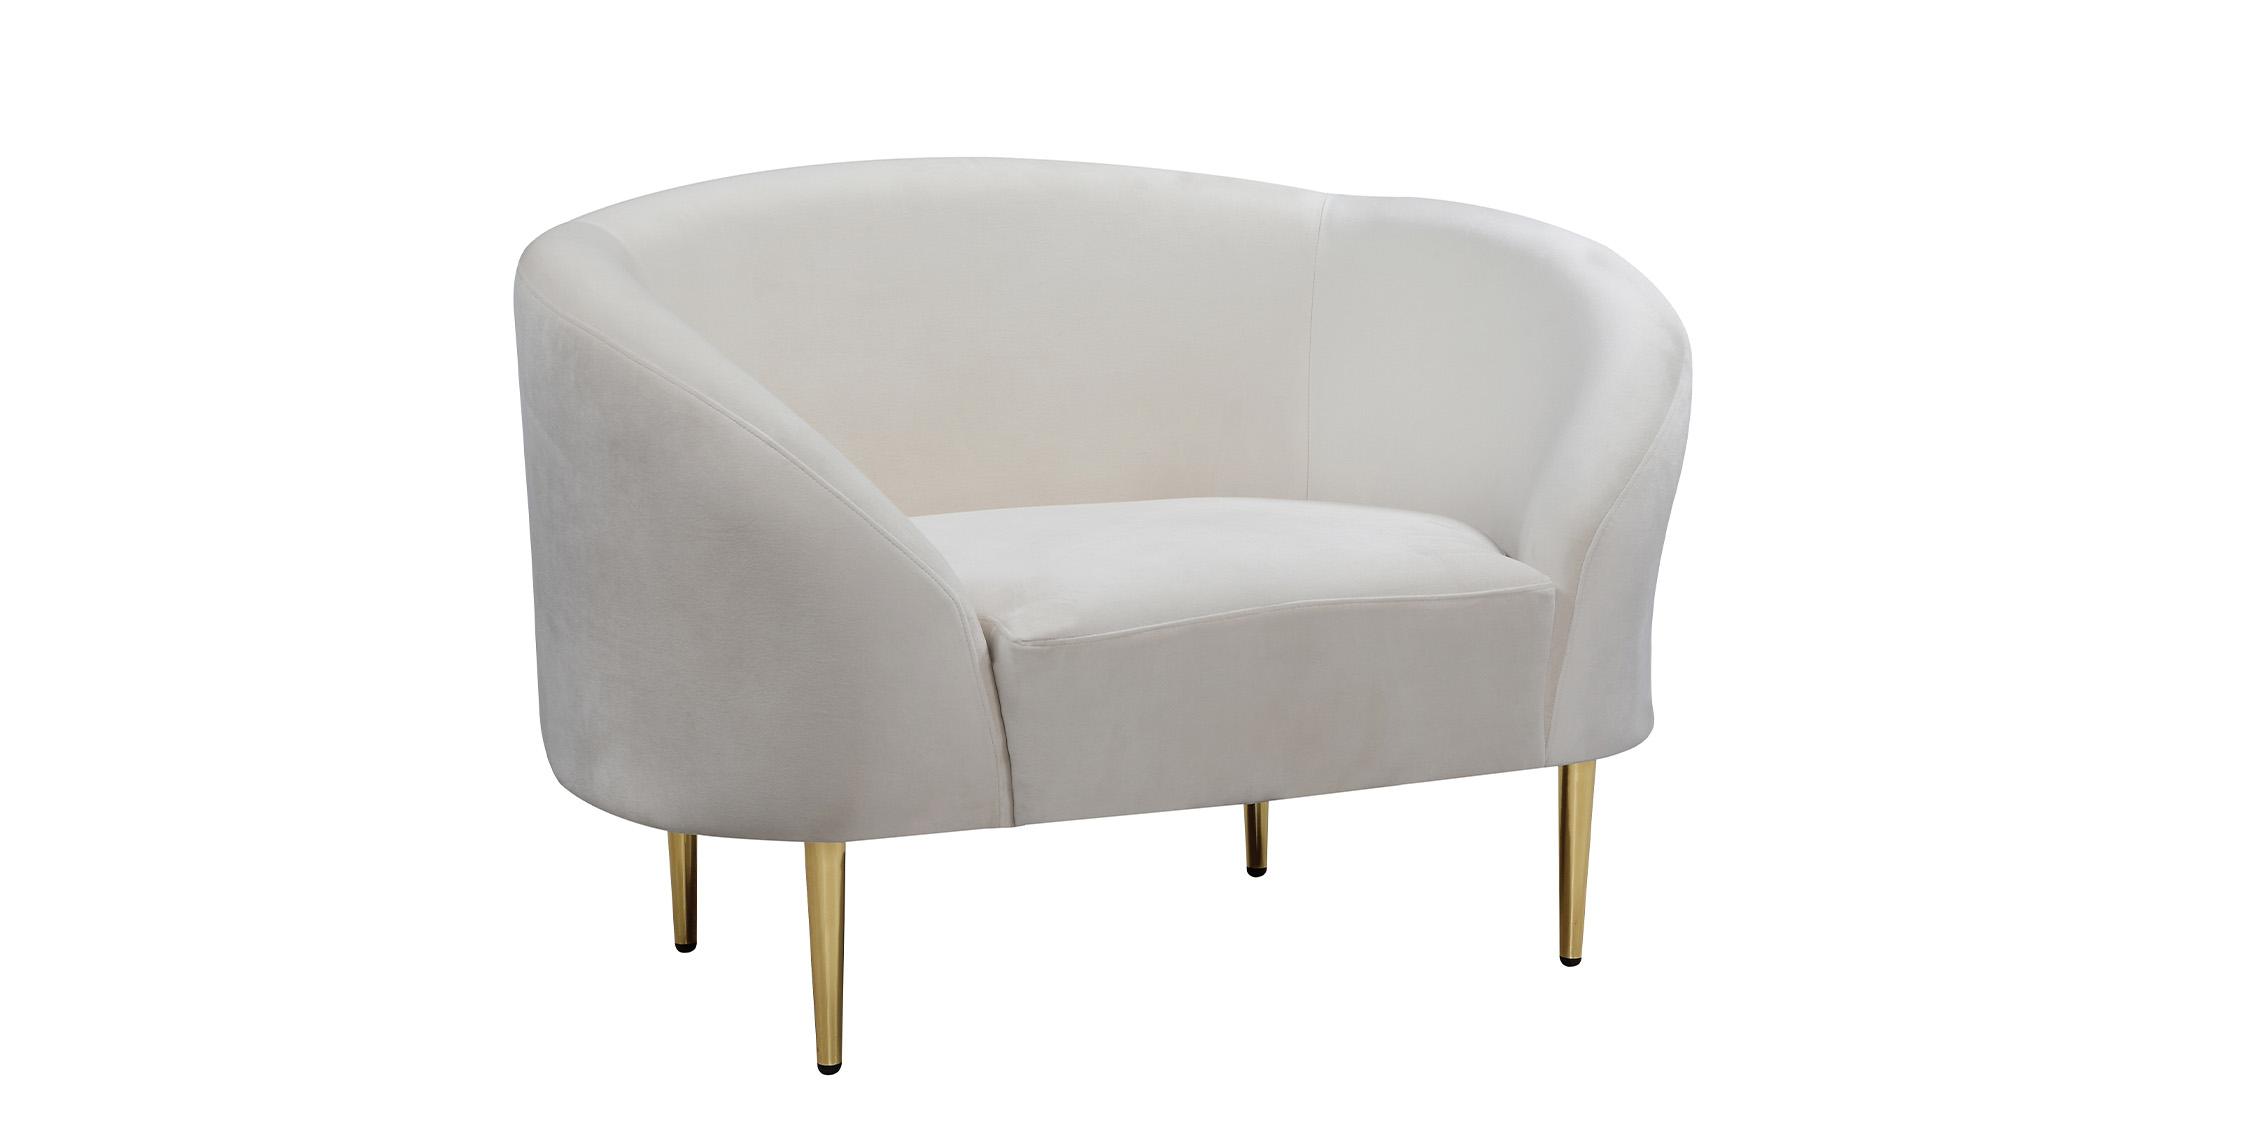 Contemporary, Modern Arm Chair RITZ 659Cream-C 659Cream-C in Cream Velvet